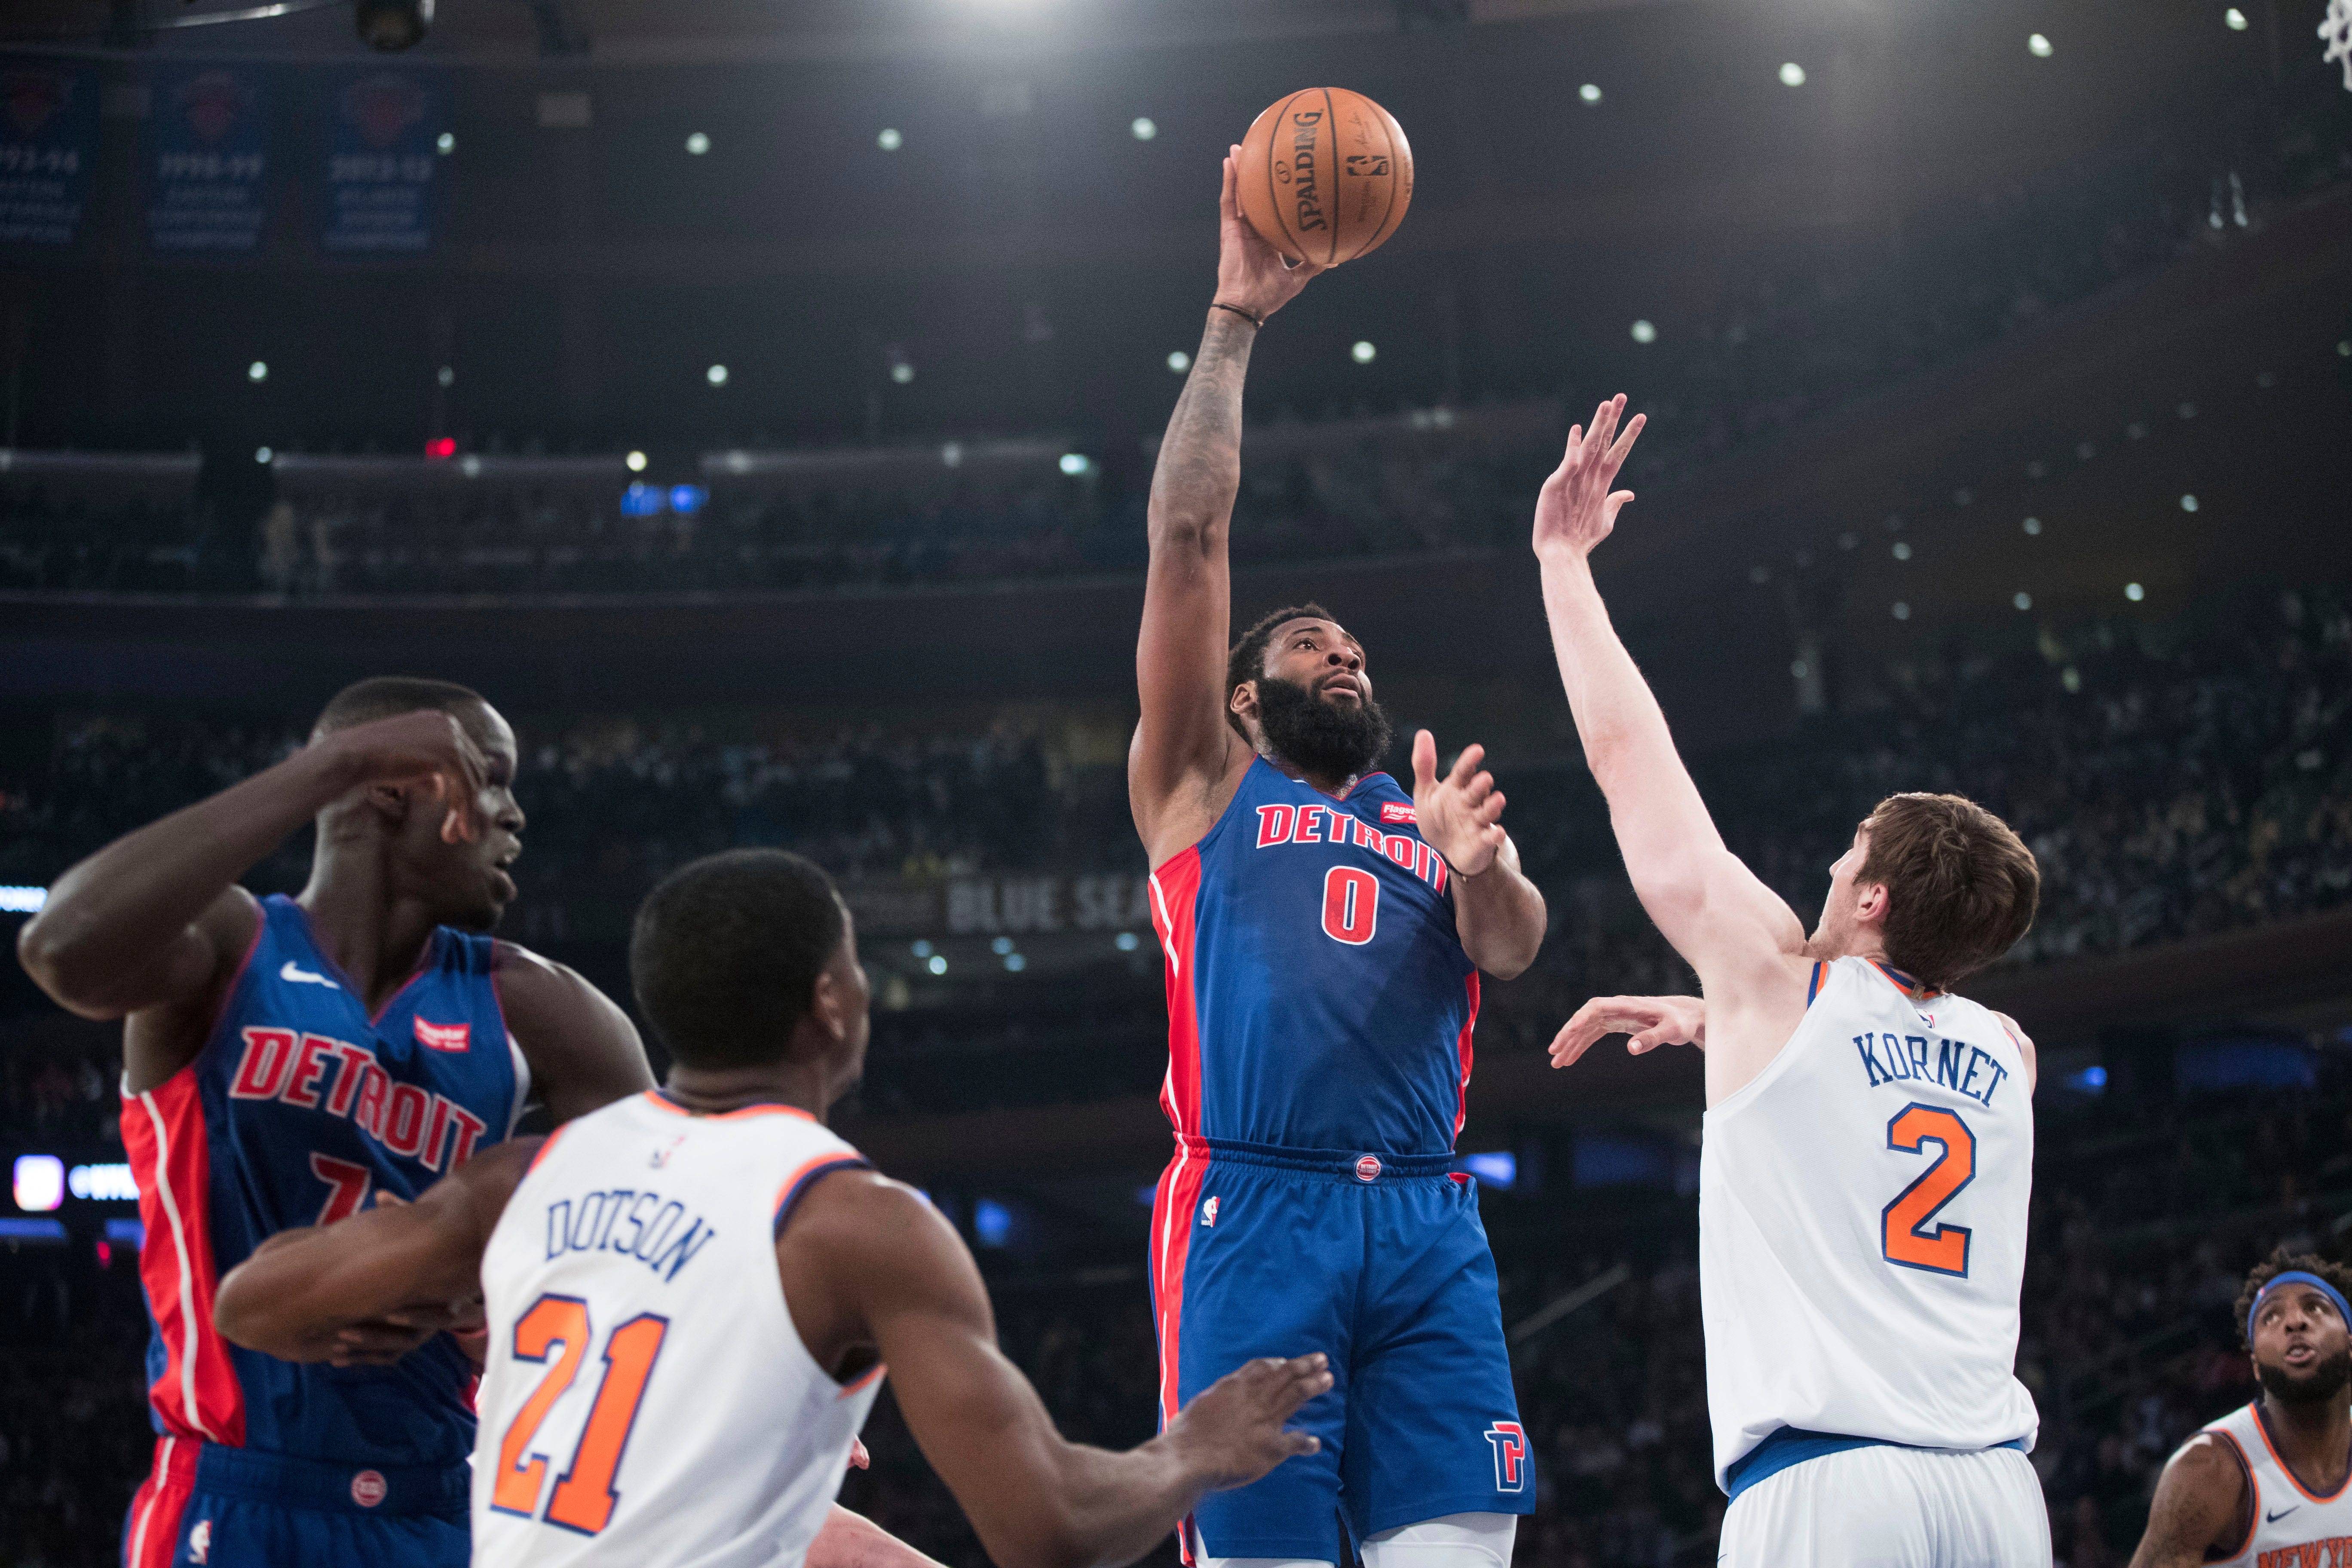 Detroit Pistons center Andre Drummond (0) goes to the basket over New York Knicks forward Luke Kornet (2) during the first half.